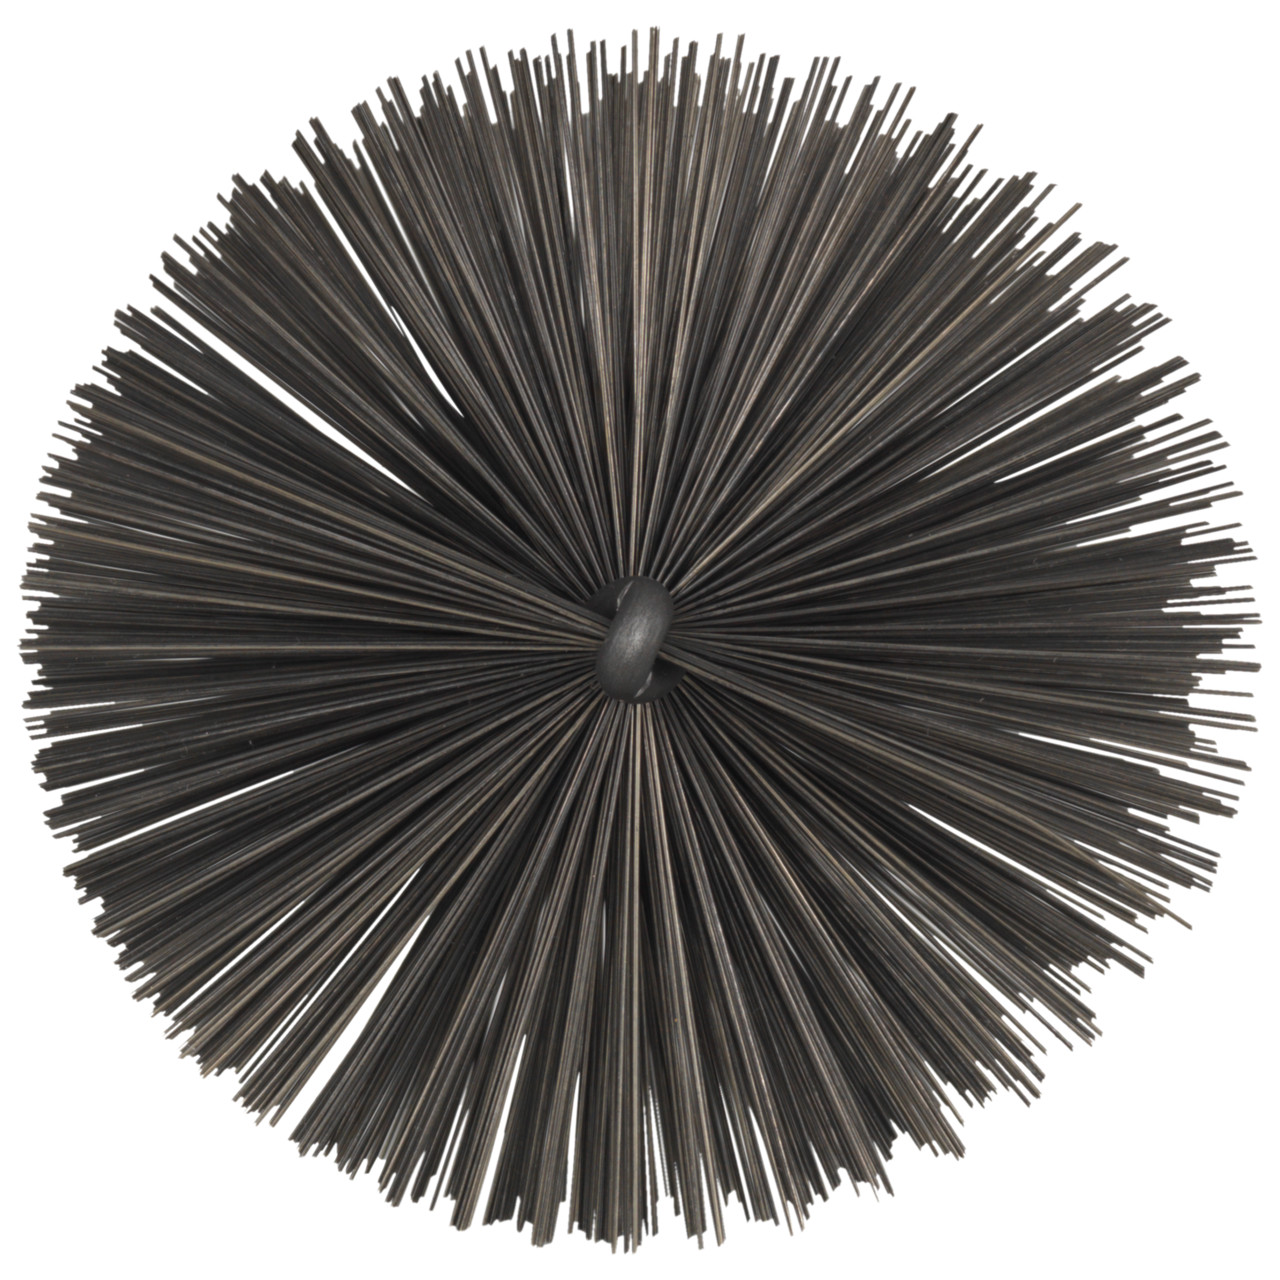 Tyrolit Cepillo para tubos con rosca exterior DxGE-I 30xA1/2-160 Para acero, forma: 18ROGDG - (cepillo para tubos), Art. 34203602